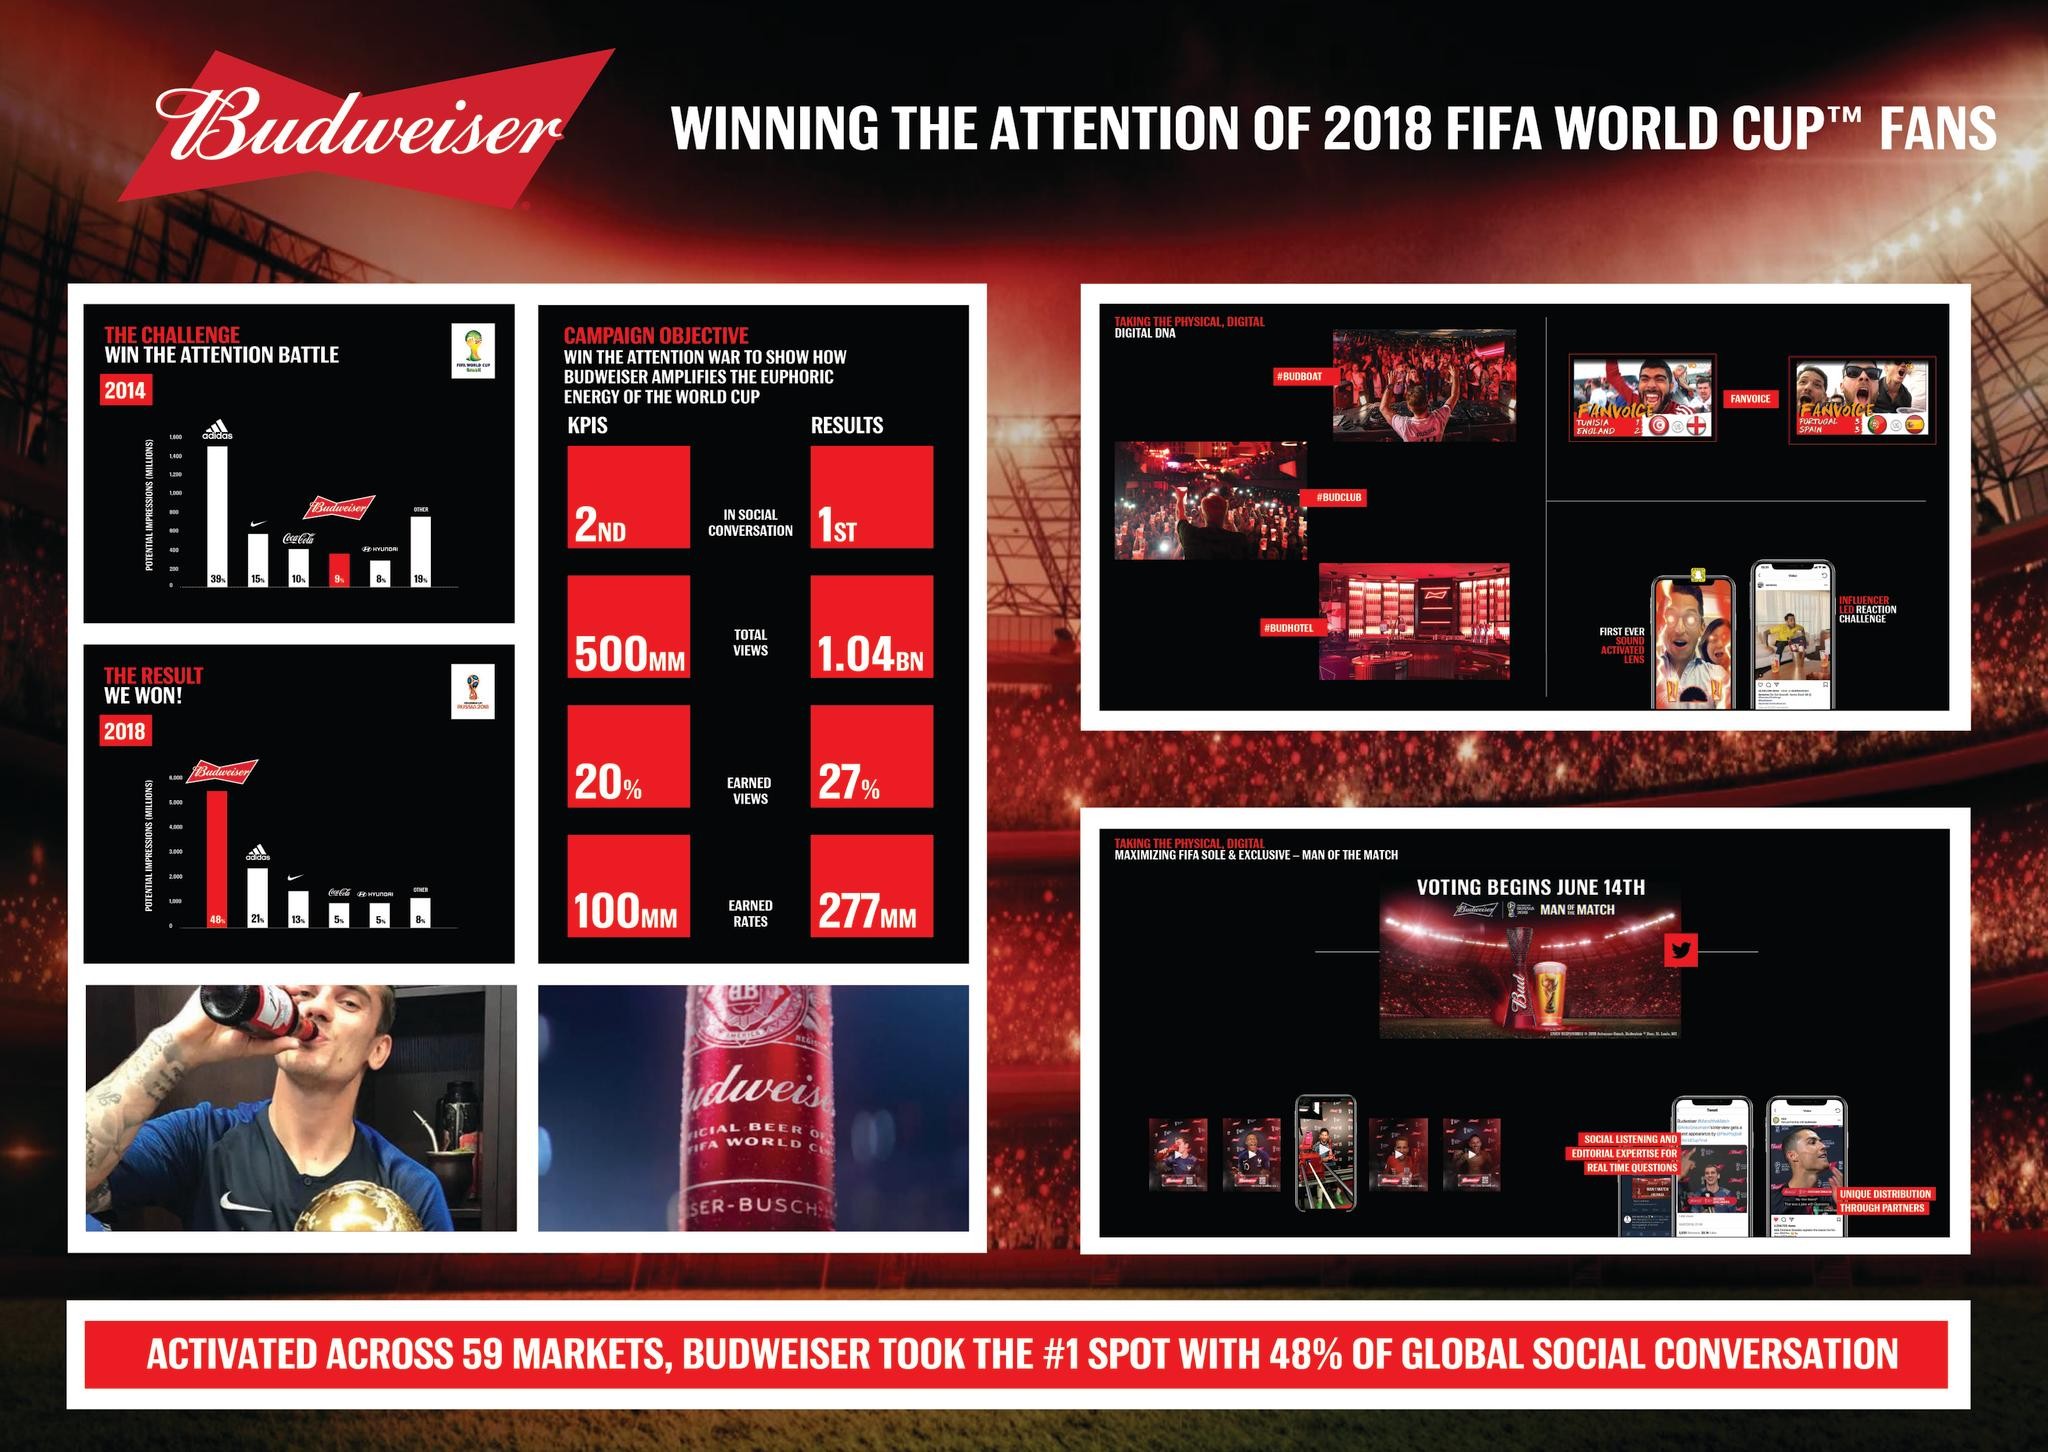 Budweiser - Winning the 2018 FIFA World Cup